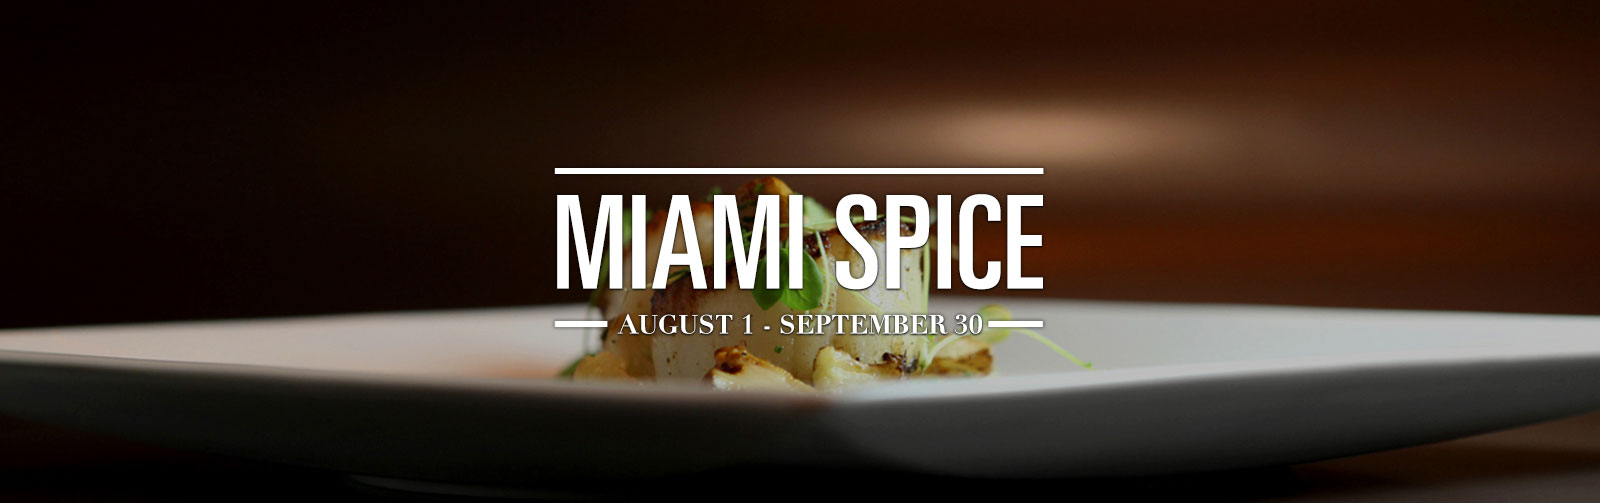 ¡No puede perderse el Miami Spice! (Video)